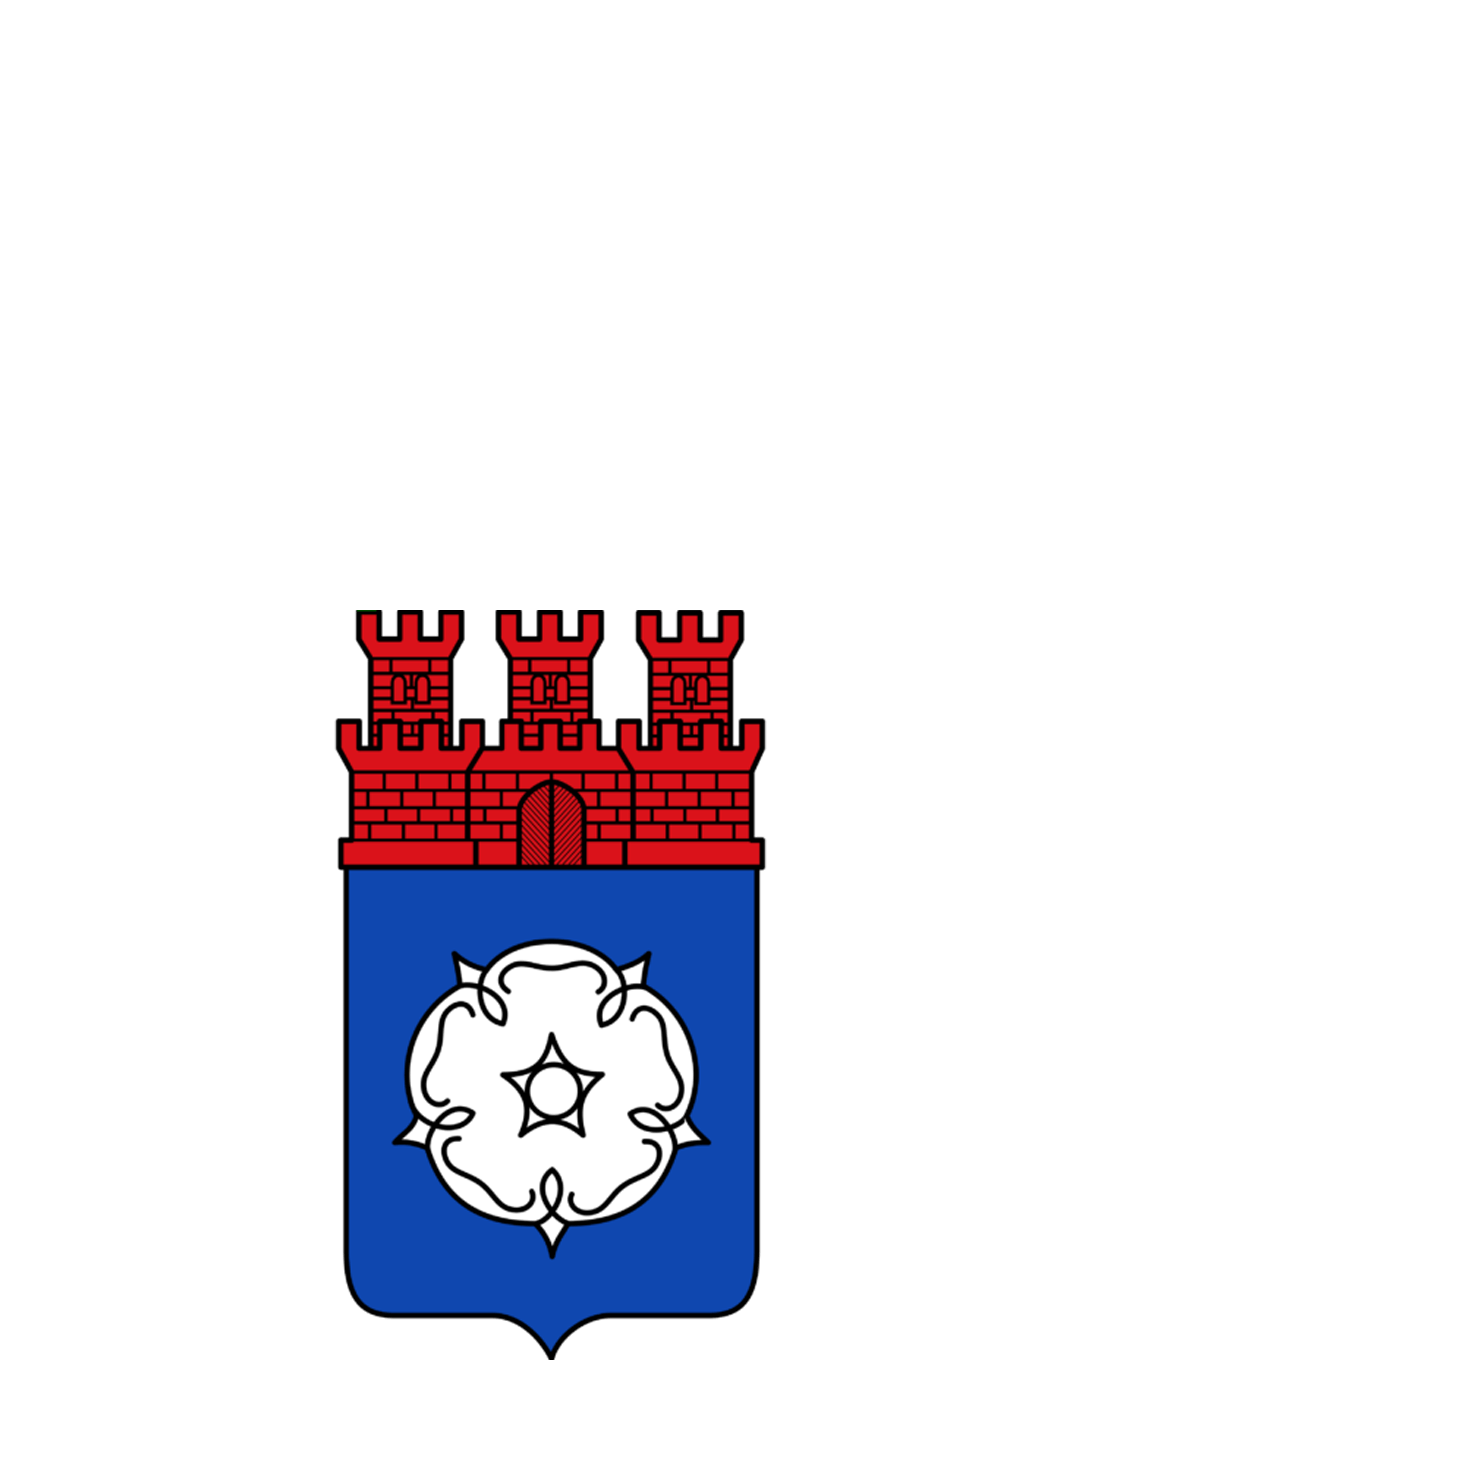 Wappen der Statt Ottweiler - © Stadt Ottweiler